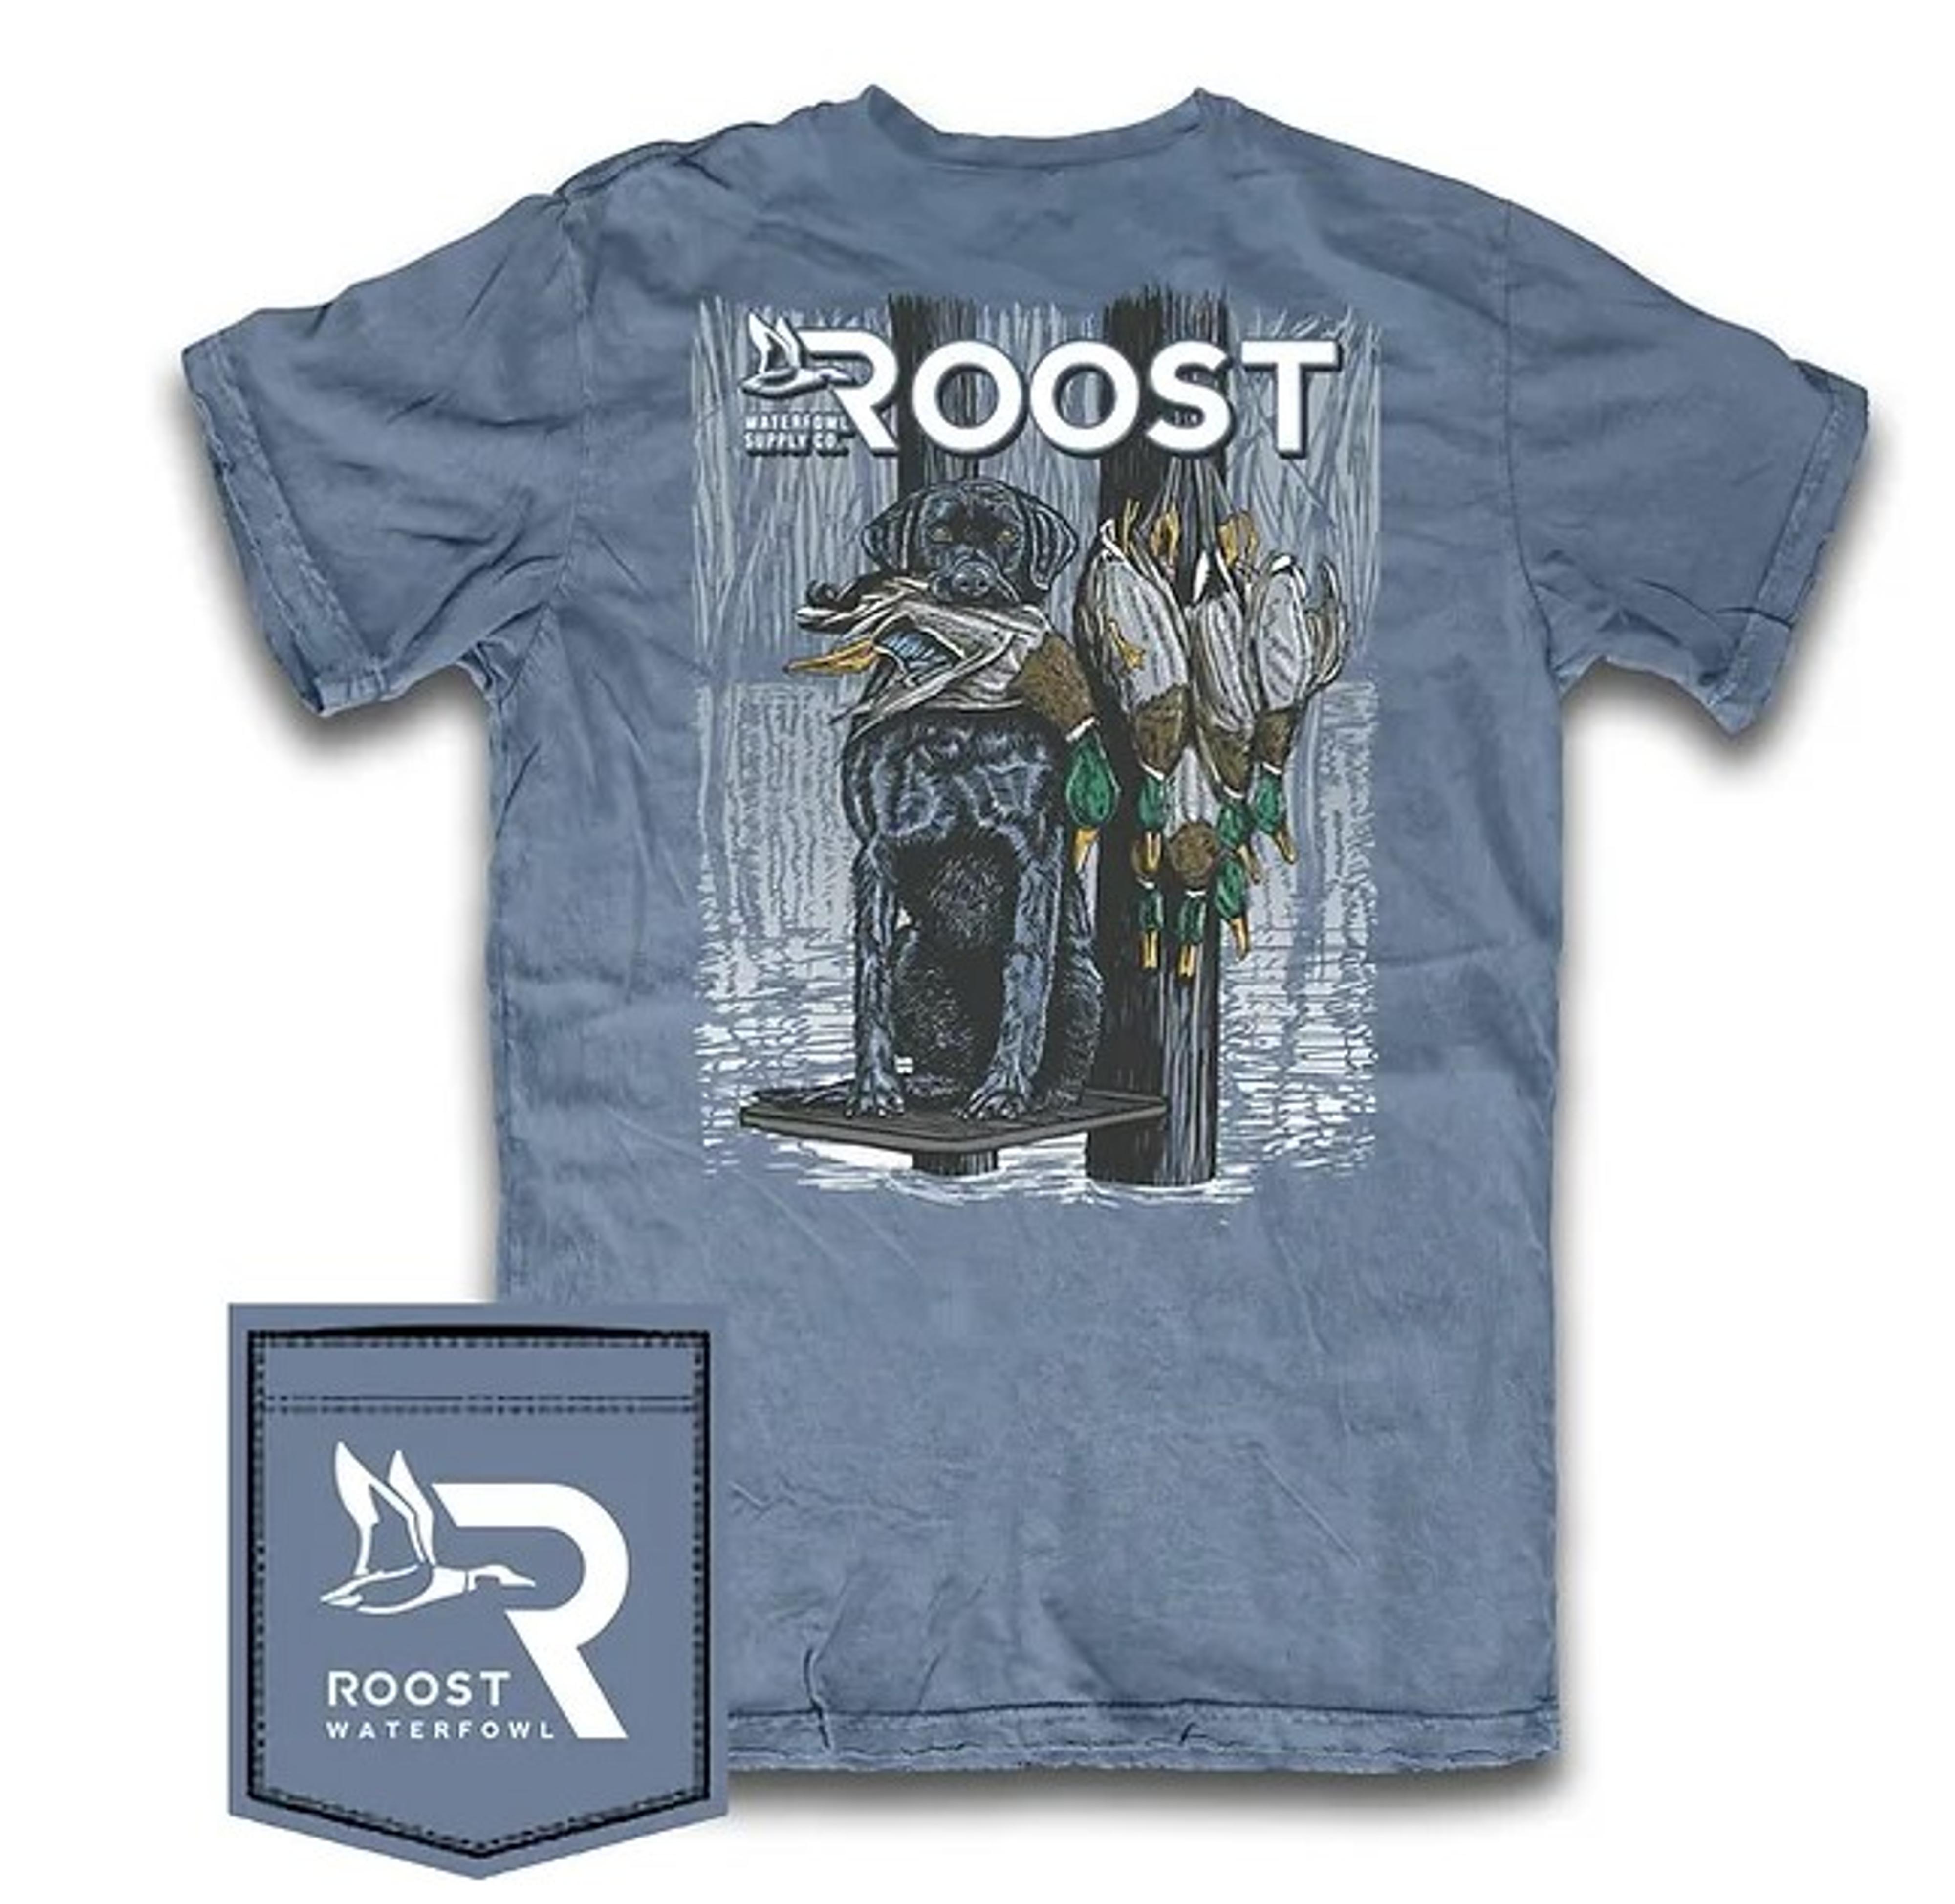  Roost Good Boy Ss T- Shirt